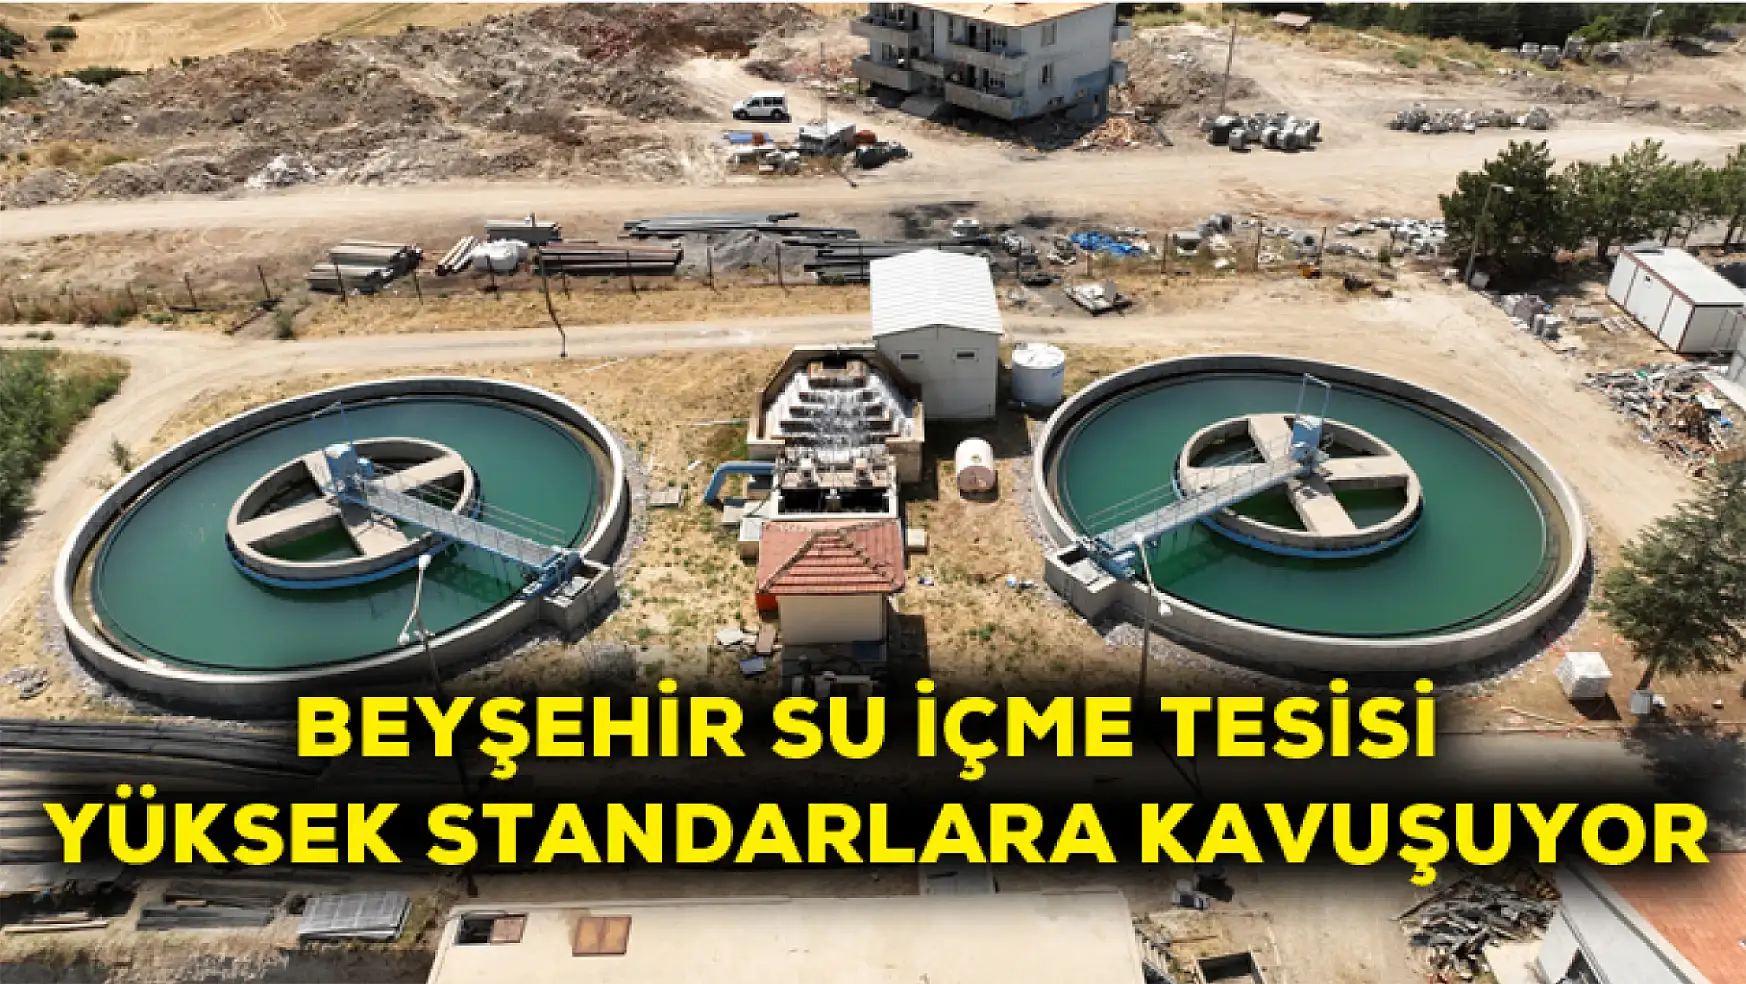 Beyşehir su içme tesisi yüksek standartlara kavuşuyor